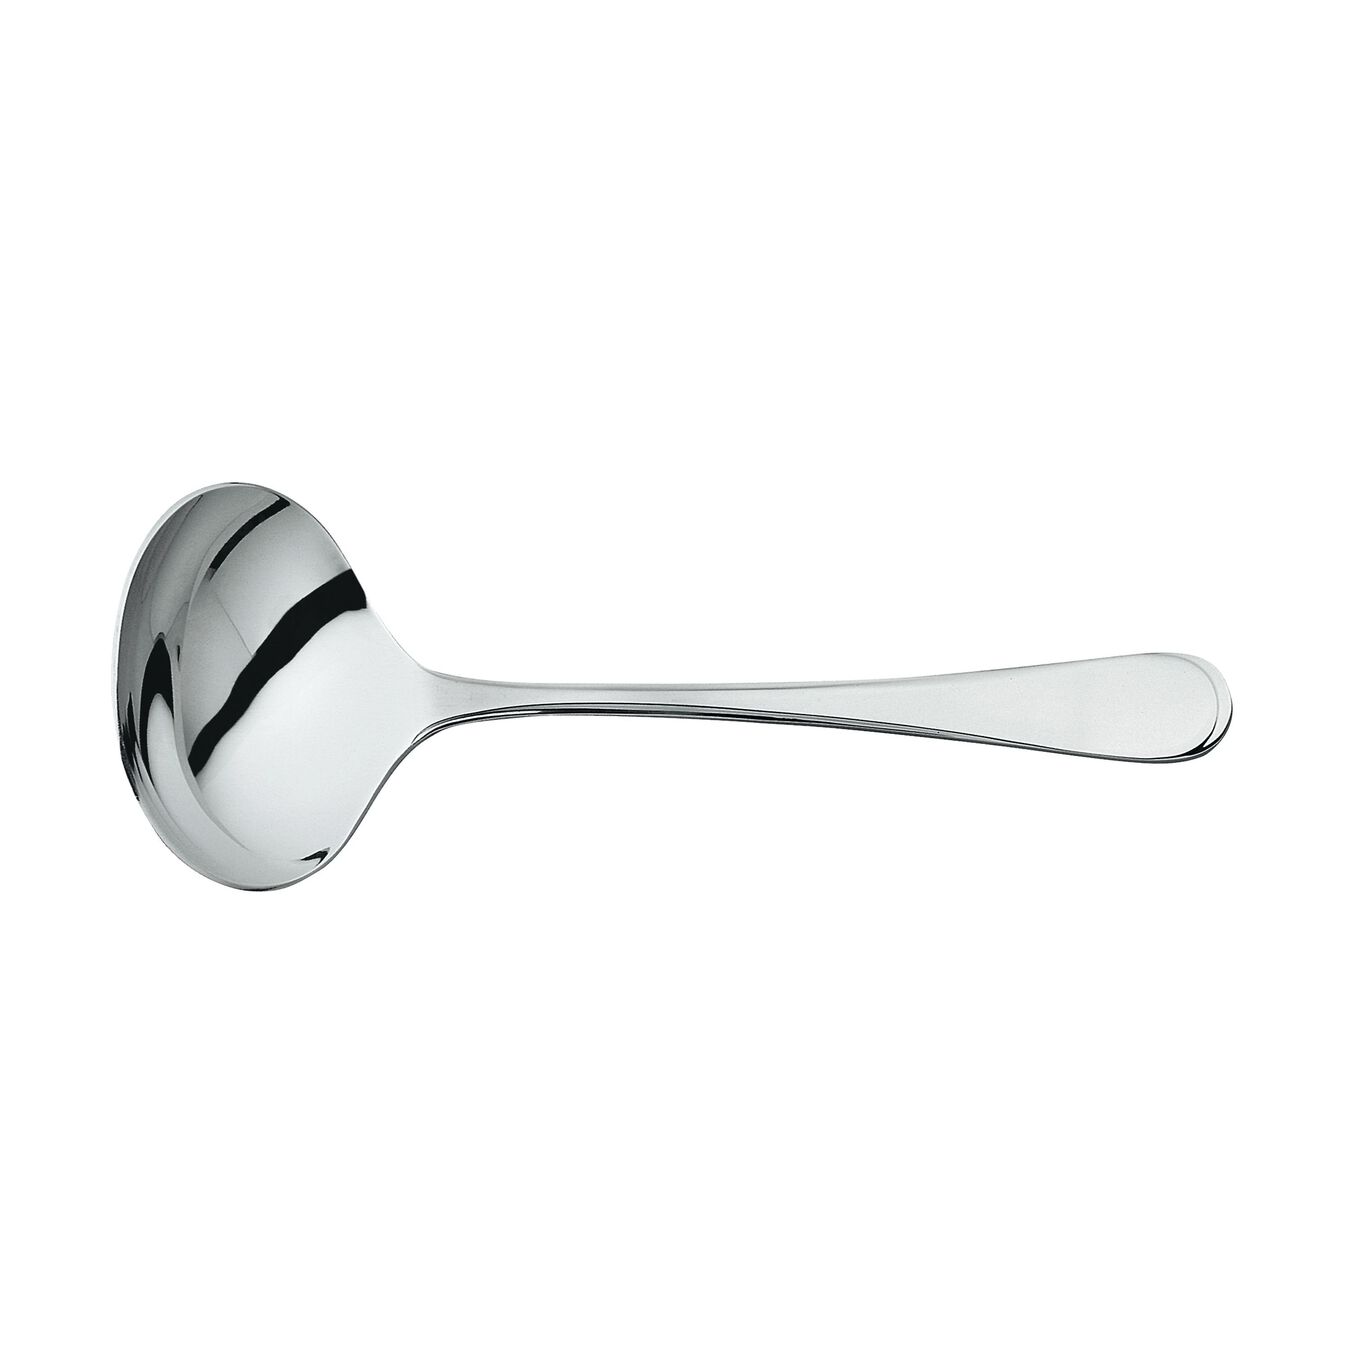 Gravy ladle, no-color | polished | 18 cm,,large 1